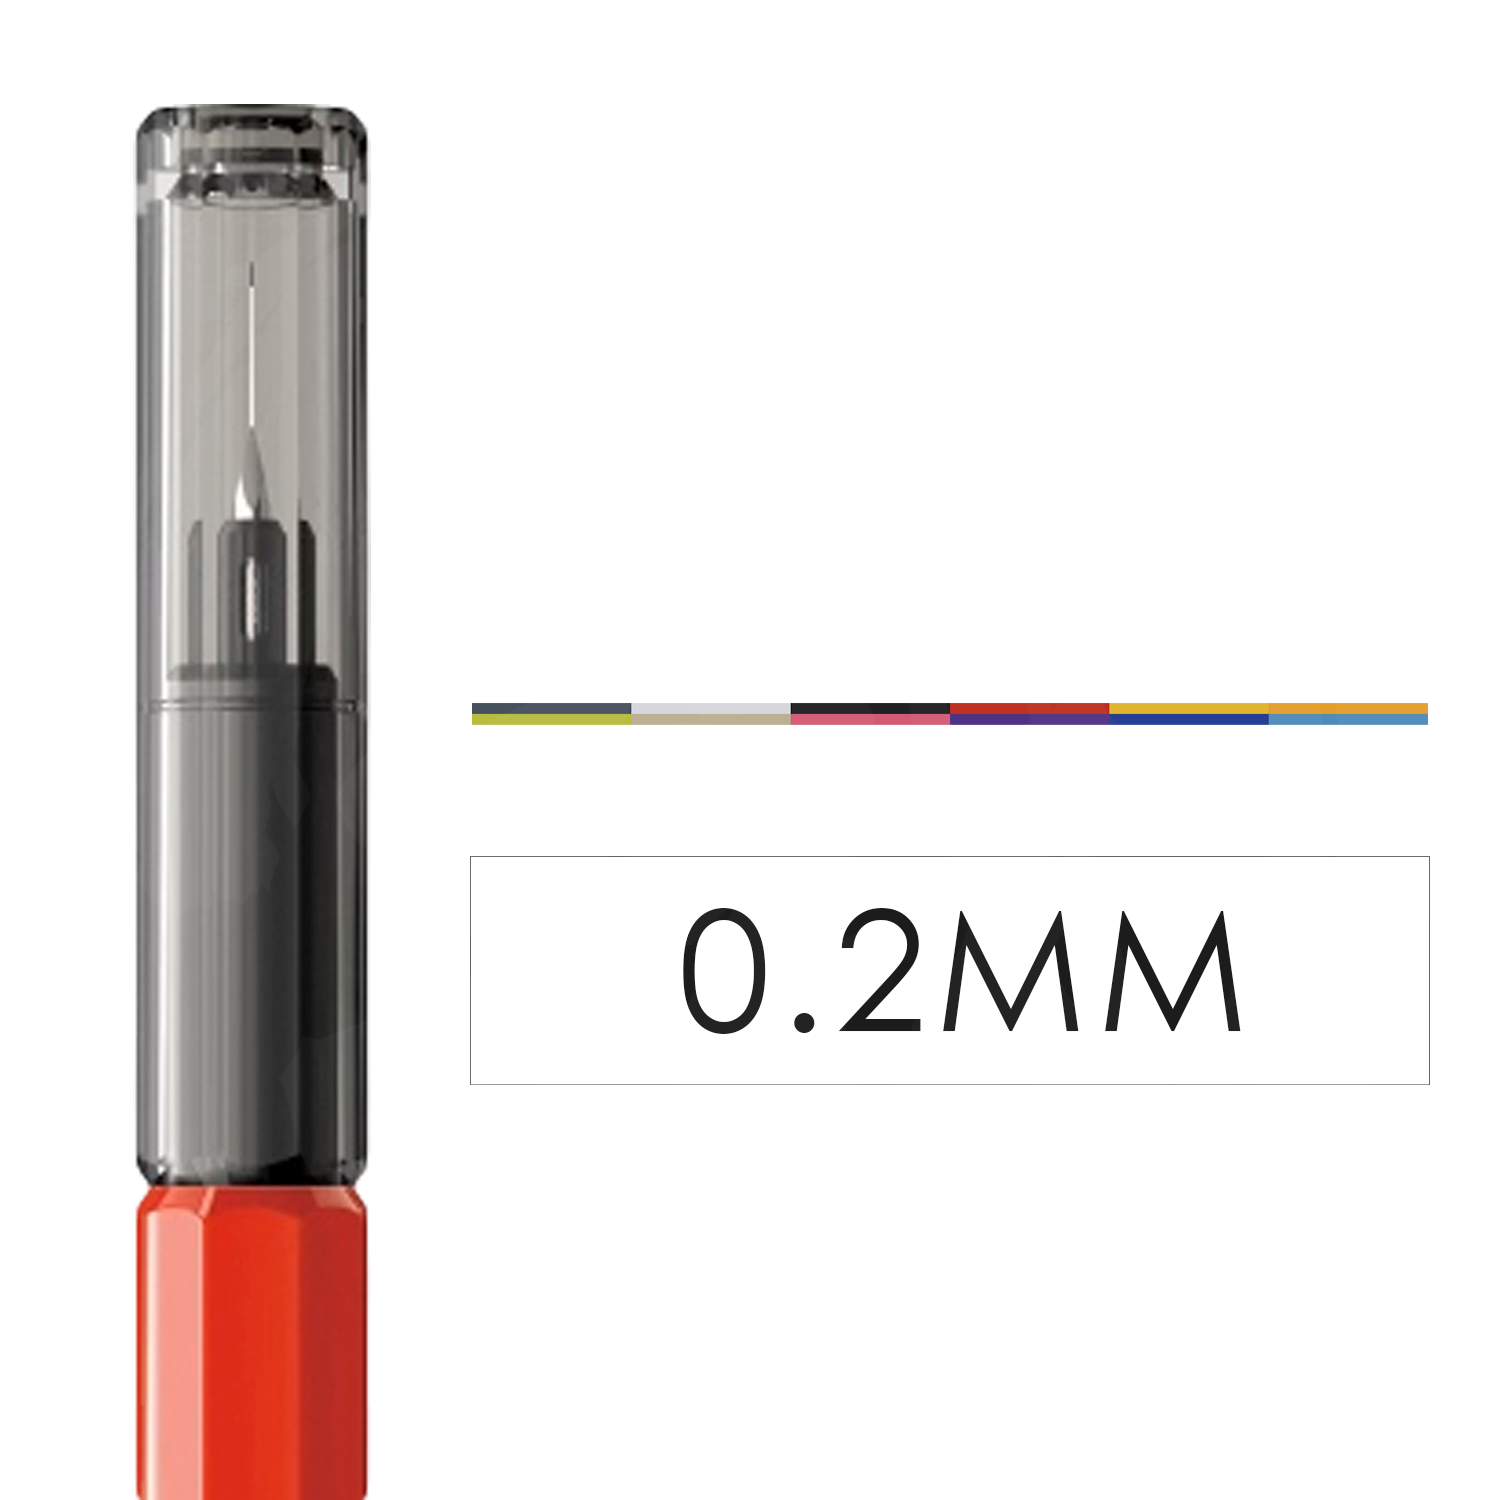 Ray Studio - Beacon [0.2mm] - ShokuninGunpla